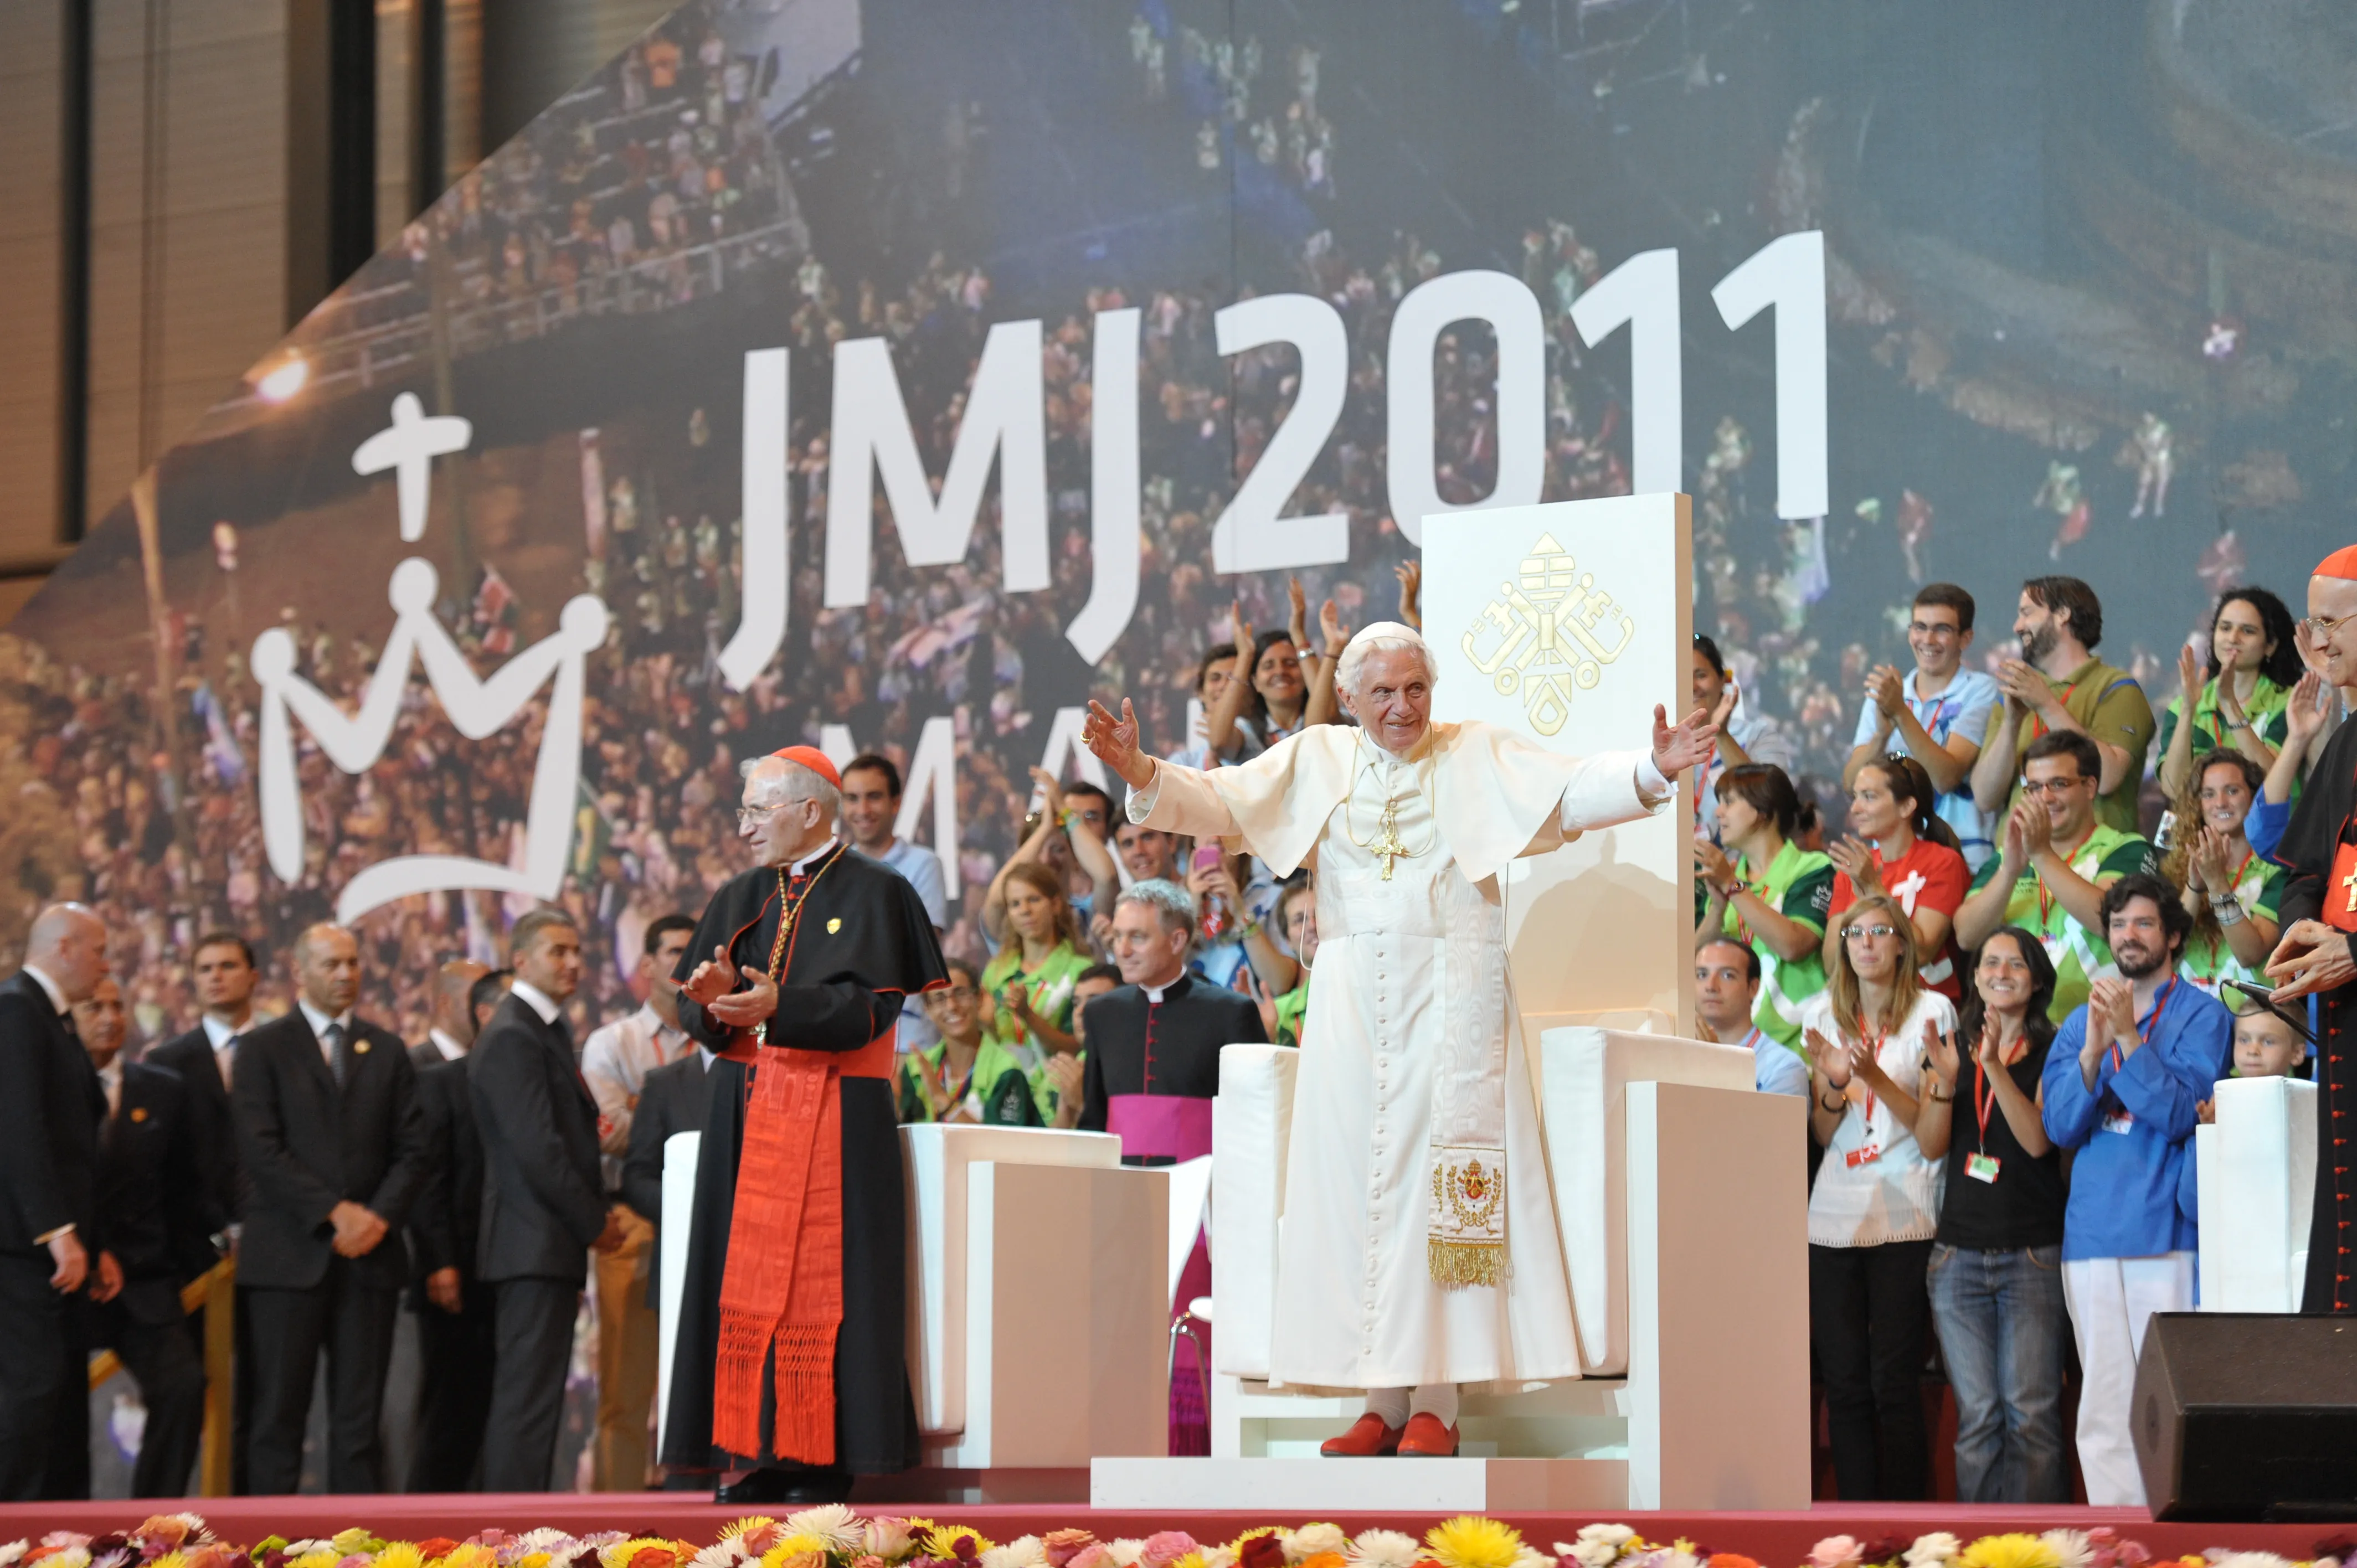 Benedicto XVI saluda a los presentes en un acto de la JMJ 2011 en Madrid. Crédito: Vatican Media?w=200&h=150